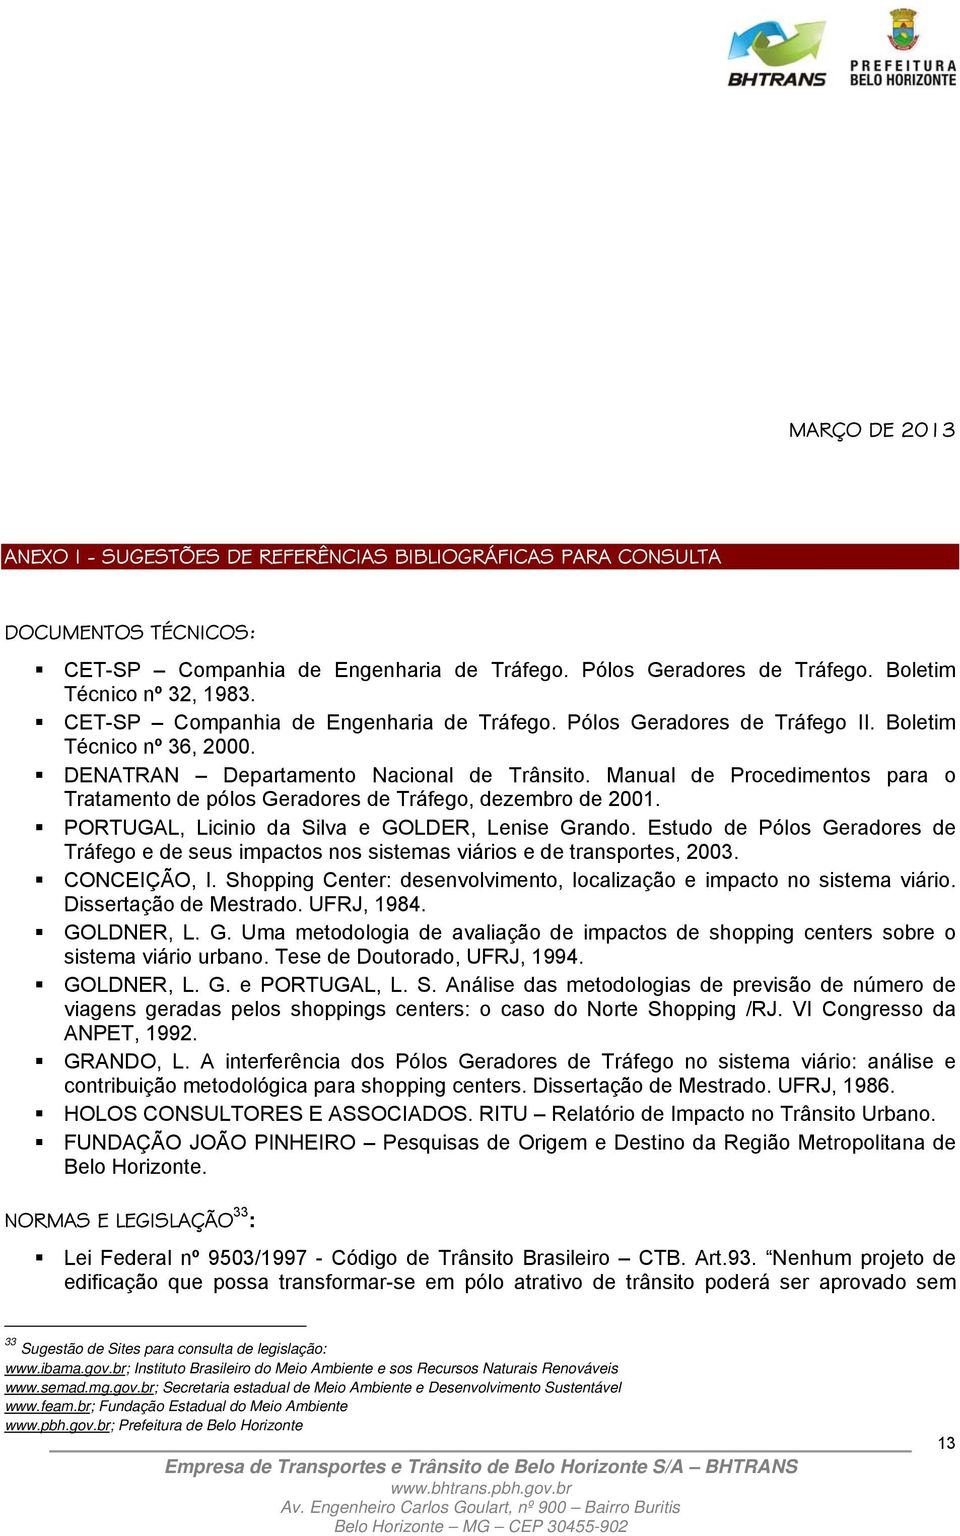 Manual de Procedimentos para o Tratamento de pólos Geradores de Tráfego, dezembro de 2001. PORTUGAL, Licinio da Silva e GOLDER, Lenise Grando.